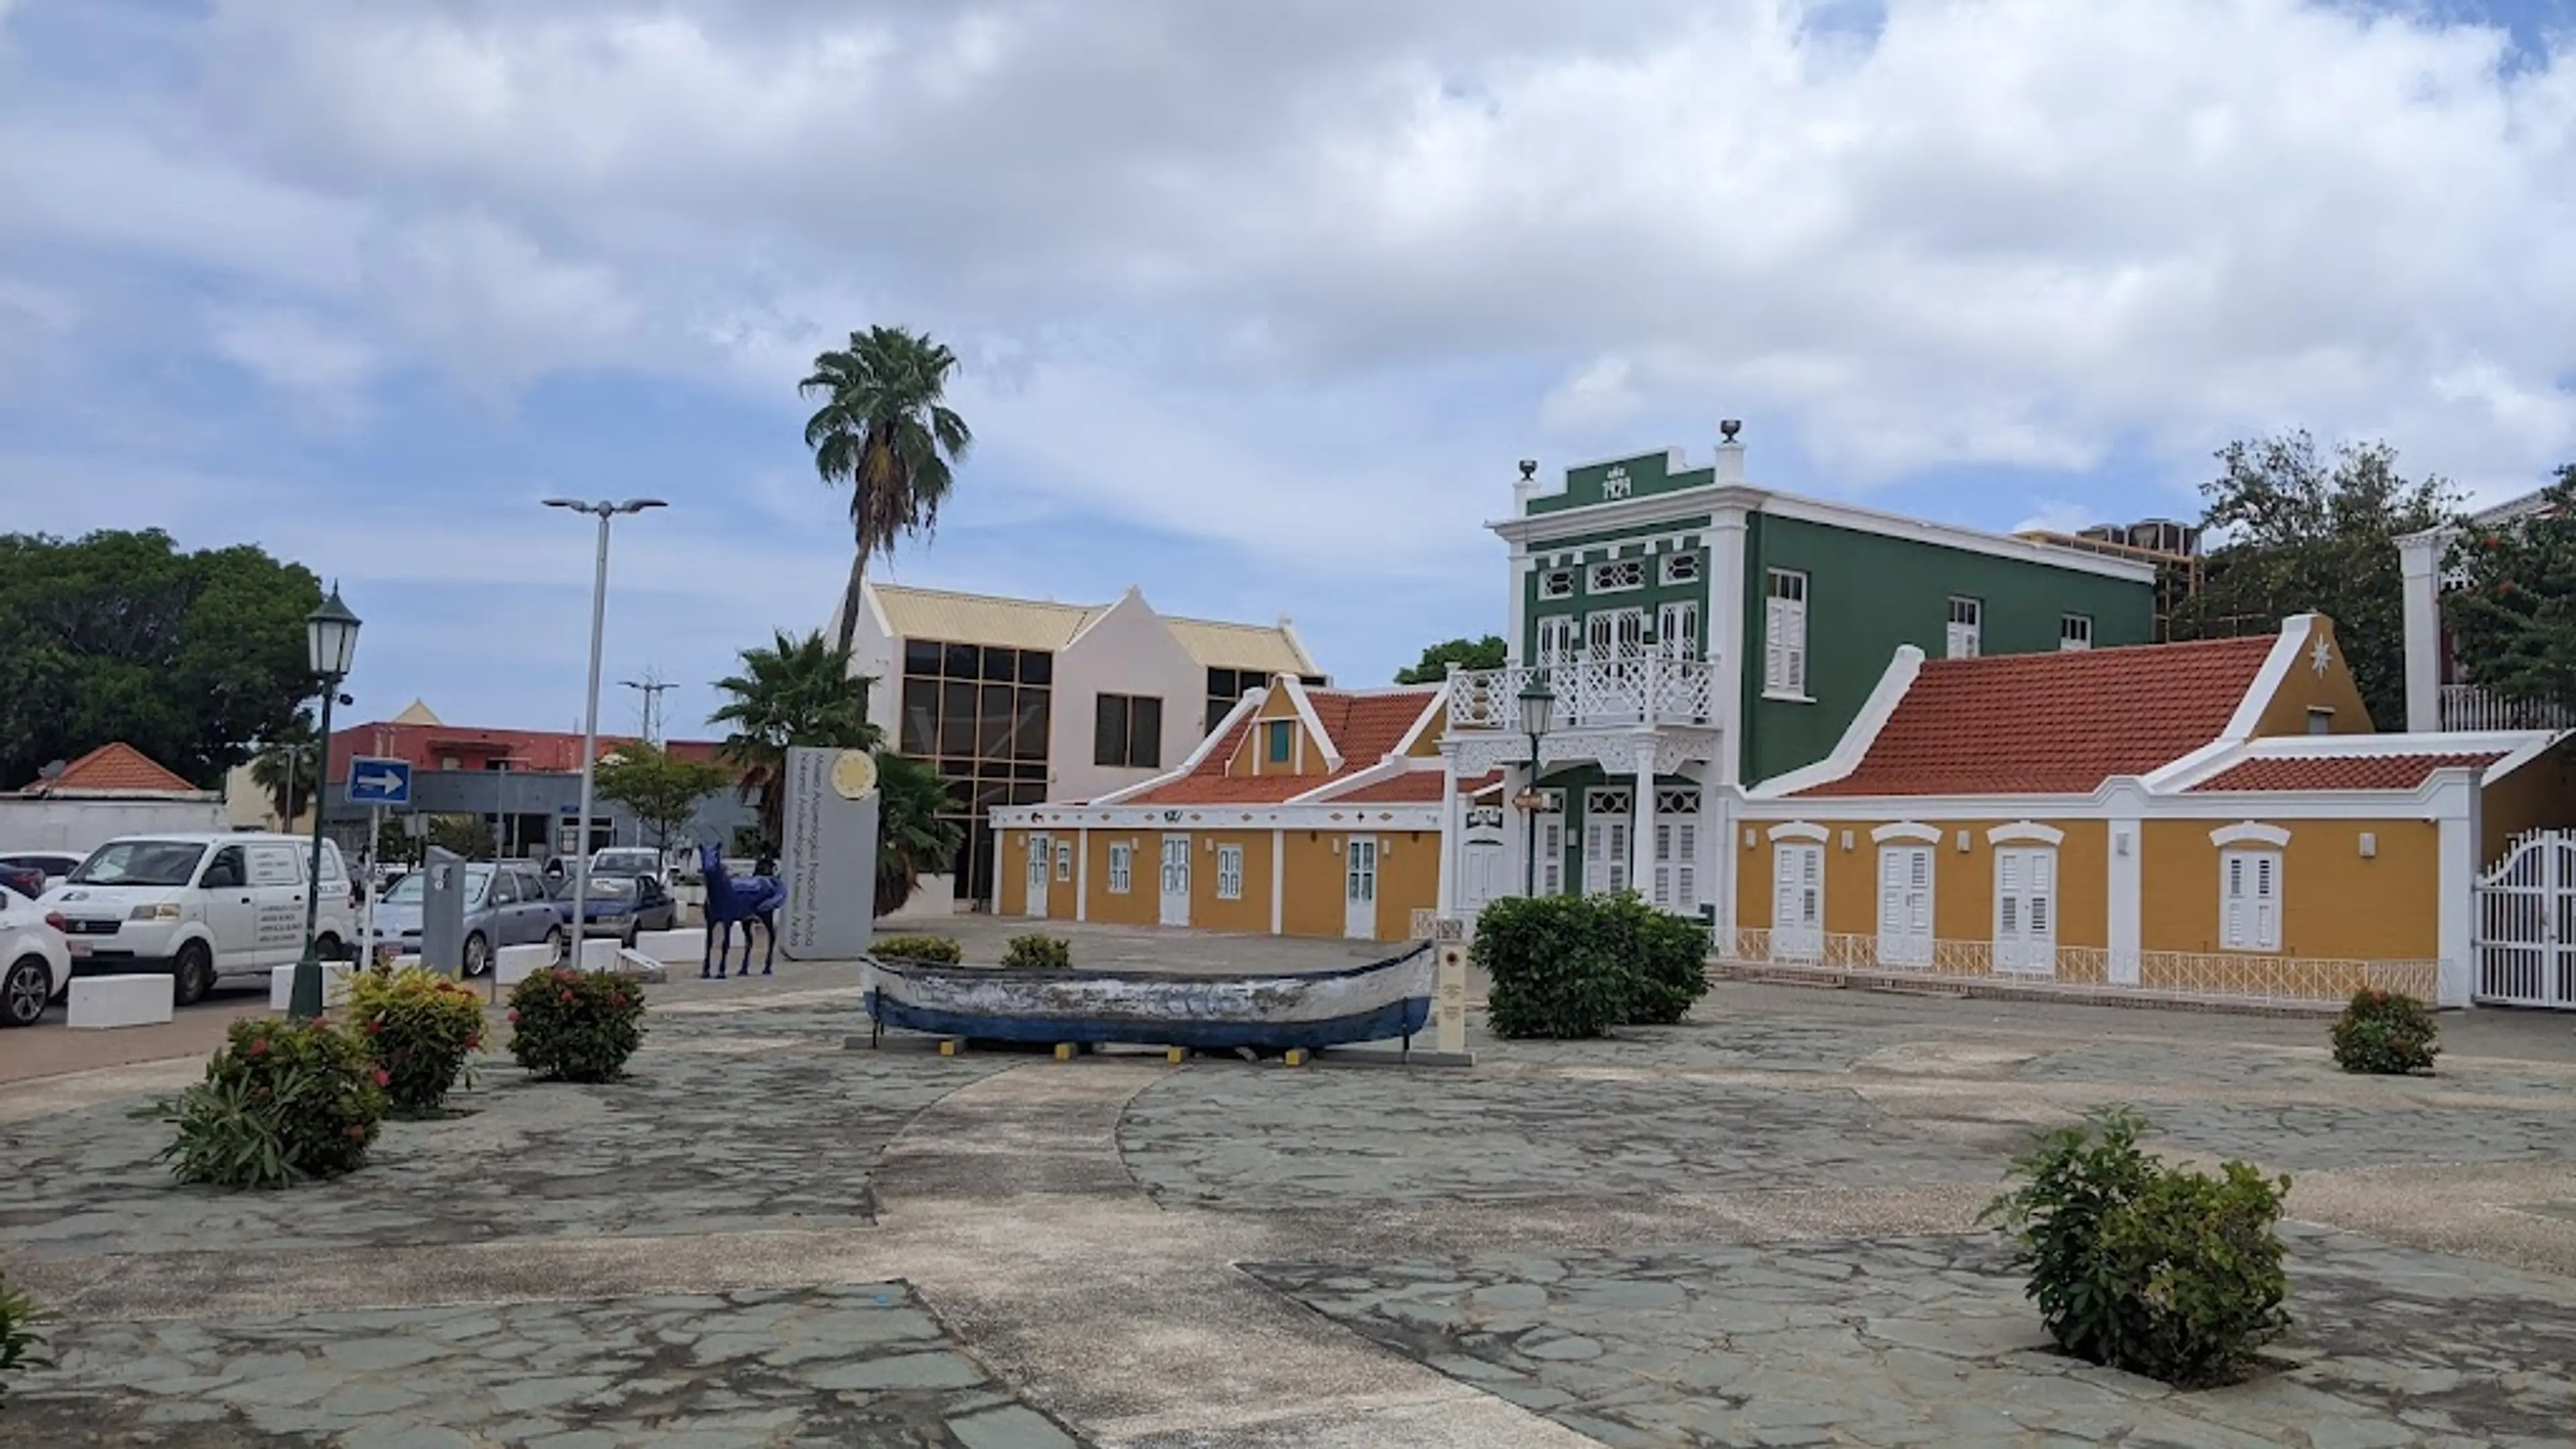 Archeological Museum of Aruba